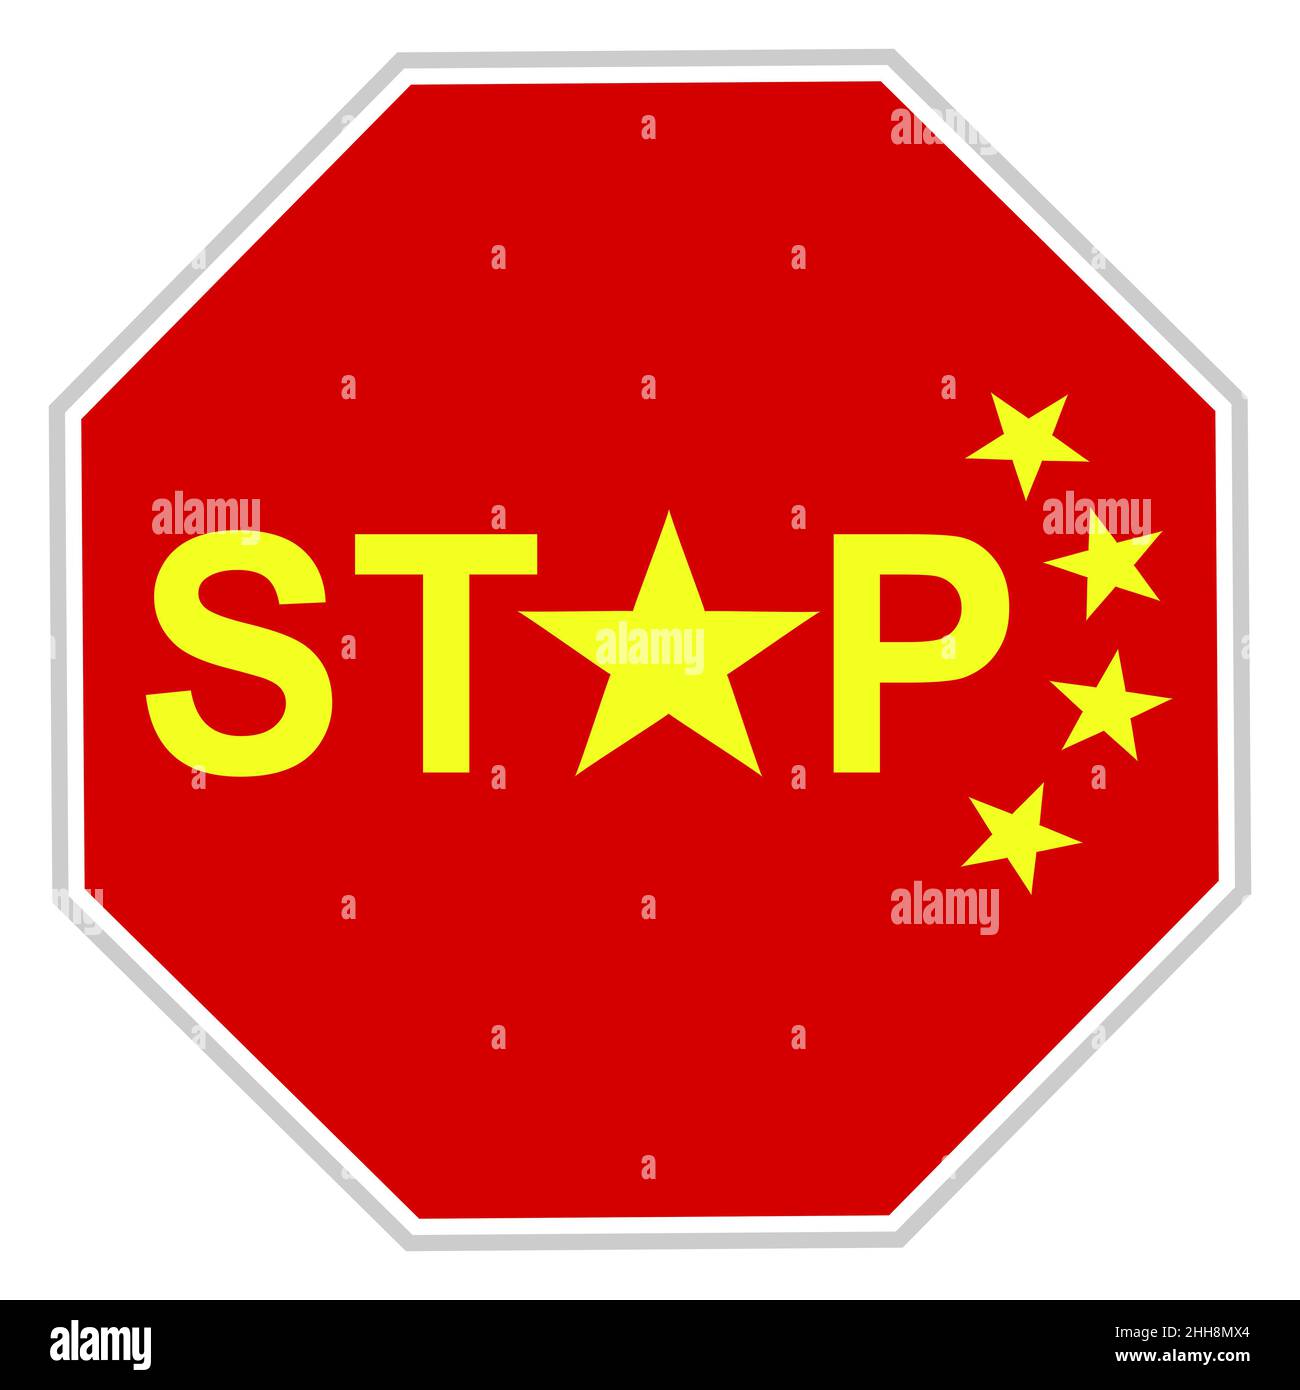 Illustrazione di una bandiera cinese che vieta di importare merci straniere, soprattutto dagli Stati Uniti a causa di una guerra commerciale Foto Stock